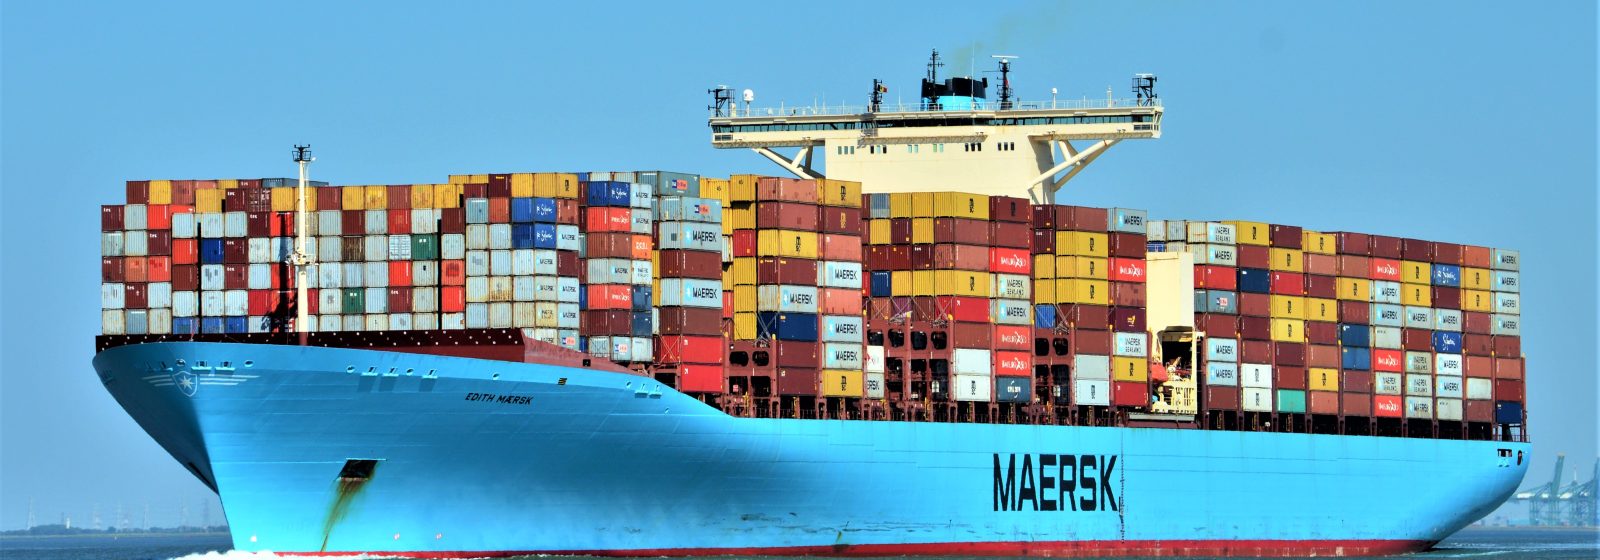 De 'Edith Maersk' afvarend op de Westerschelde